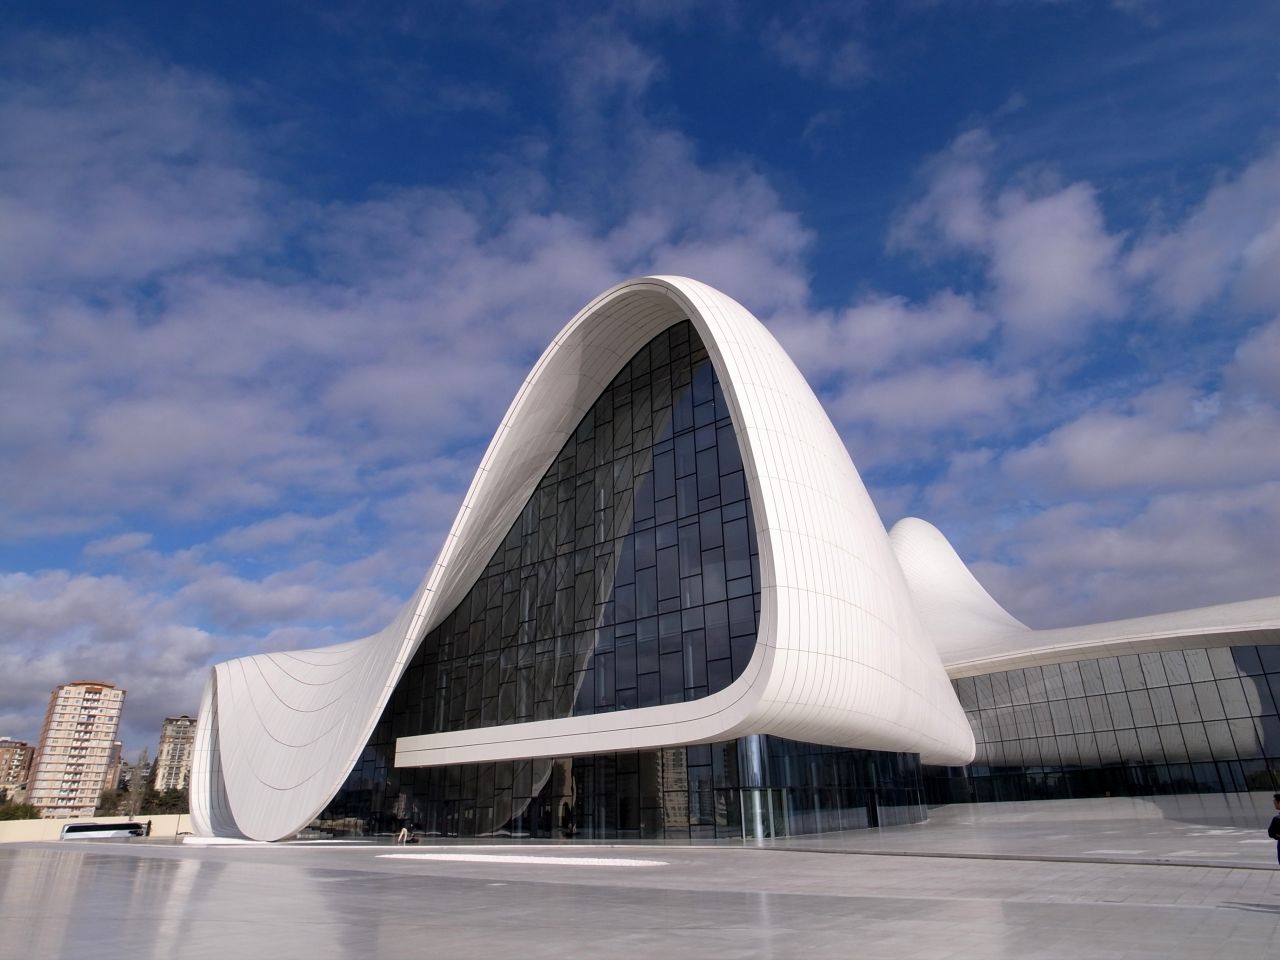 La empresa de datos de edificios Emporis ha publicado una lista de las salas de conciertos más espectaculares del mundo. <br />El Centro Heydar Aliyev en Bakú, Azerbaiyán, tiene "formas fluidas que contrastan con la rigidez, la arquitectura monumental que normalmente encuentras en Bakú". El presidente Ilham Aliyev, quien inauguró oficialmente el edificio el 10 de mayo de 2012, bautizó al edificio con el nombre de su difunto padre, Heydar Aliyev, que también era presidente de Azerbaiyán. Arquitecto: Zaha Hadid Architects. <br />